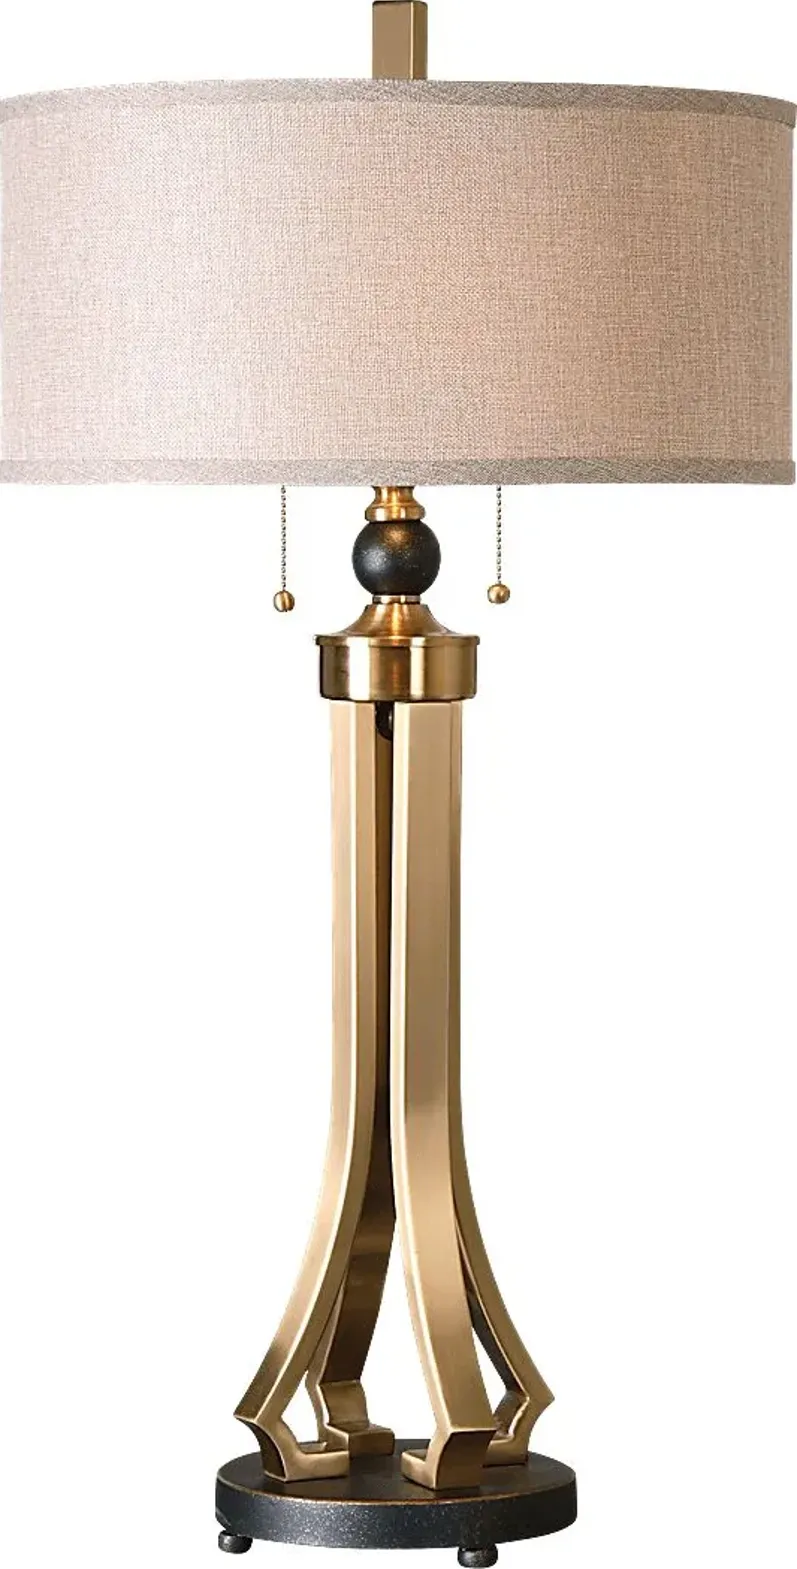 Merritt Island Brass Lamp